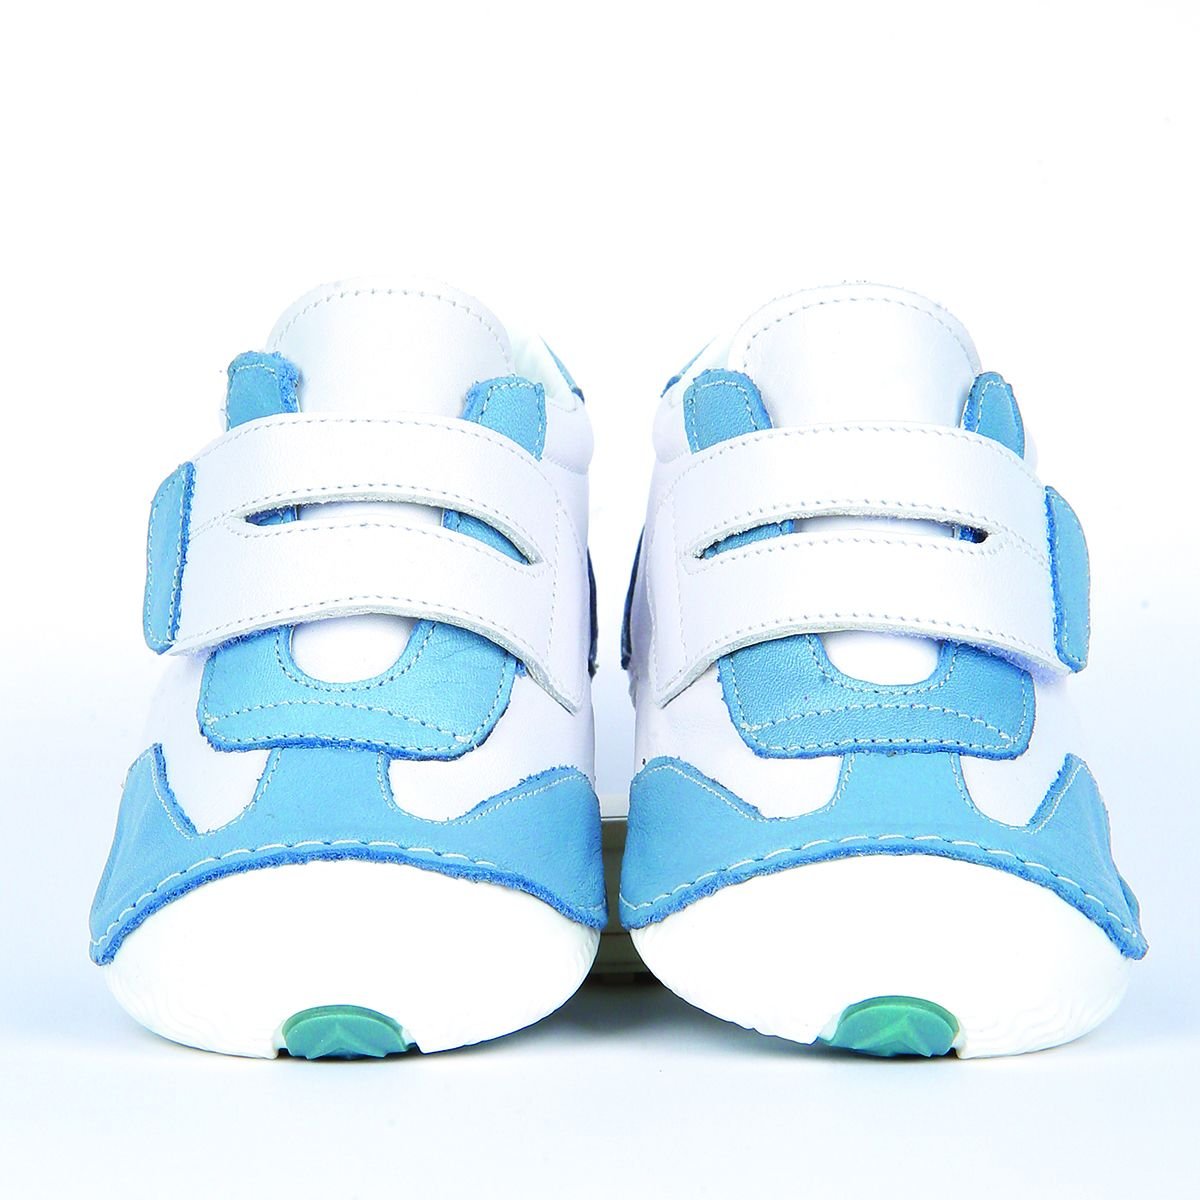 Hakiki Deri Ortopedik İlk Adım Bebek Ayakkabısı Mavi Beyaz